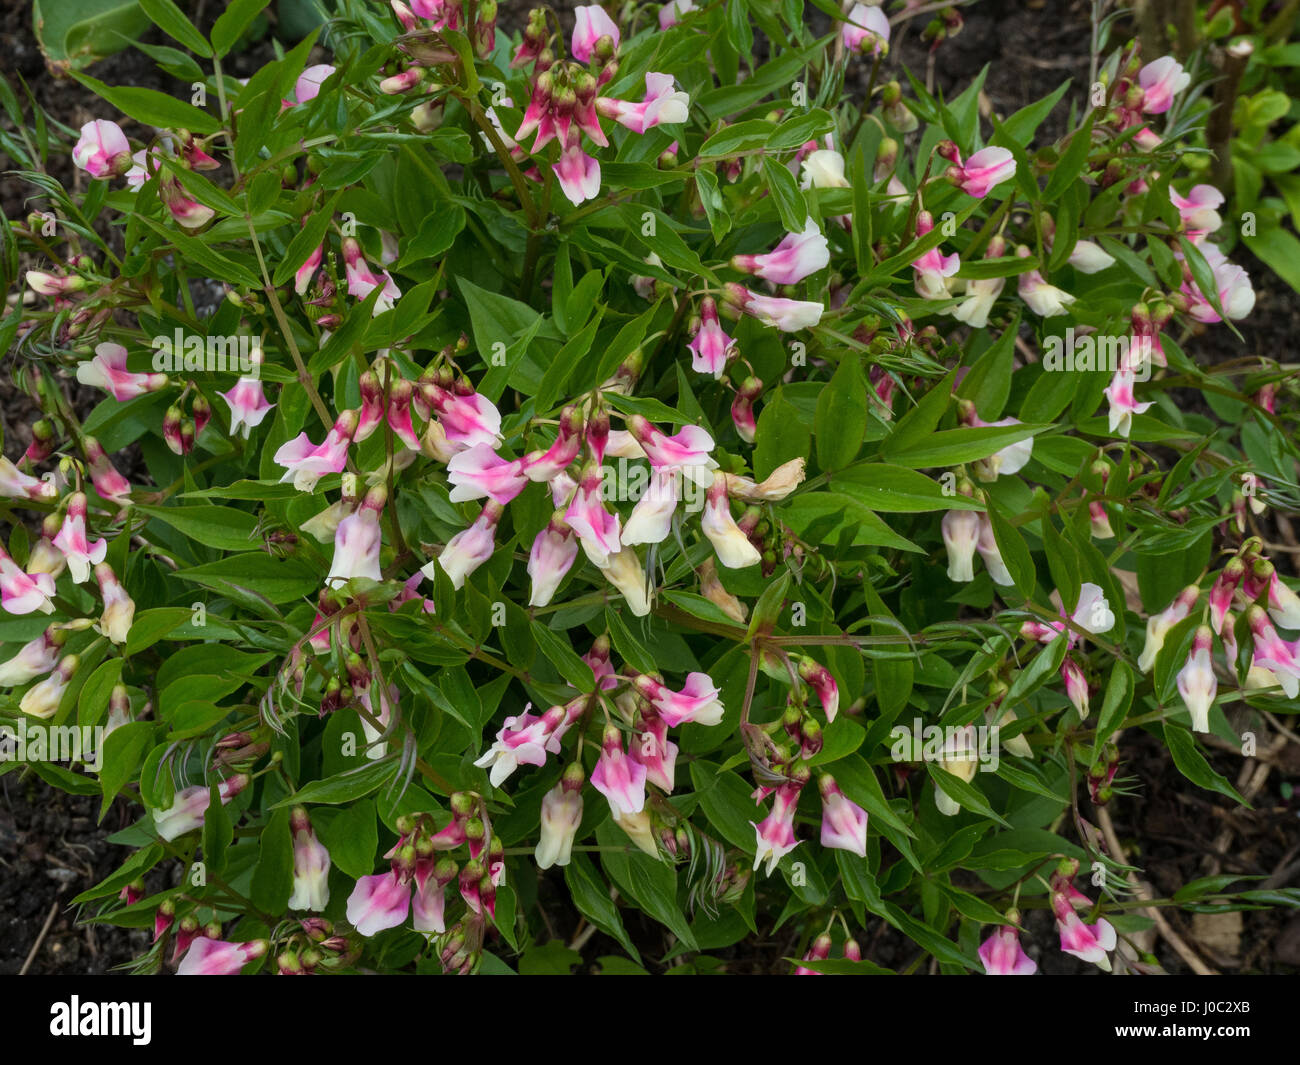 Lathyrus vernus alboroseus in full flower Stock Photo